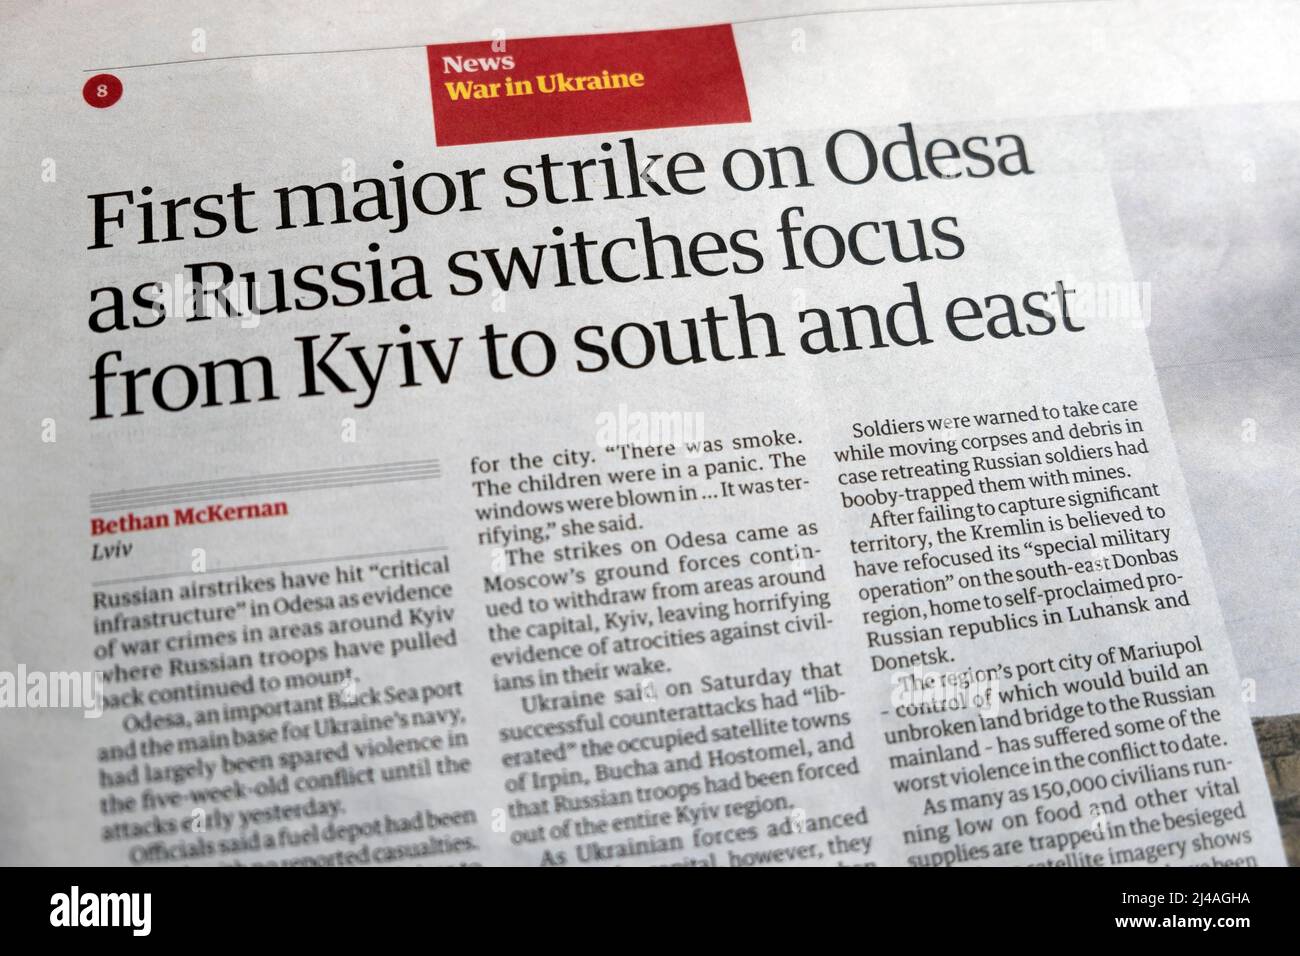 "La première grande grève sur Odesa alors que la Russie change de point de vue de Kiev au sud et à l'est" le journal Guardian titre Ukraine coupure de guerre 3 avril 2022 Royaume-Uni Banque D'Images